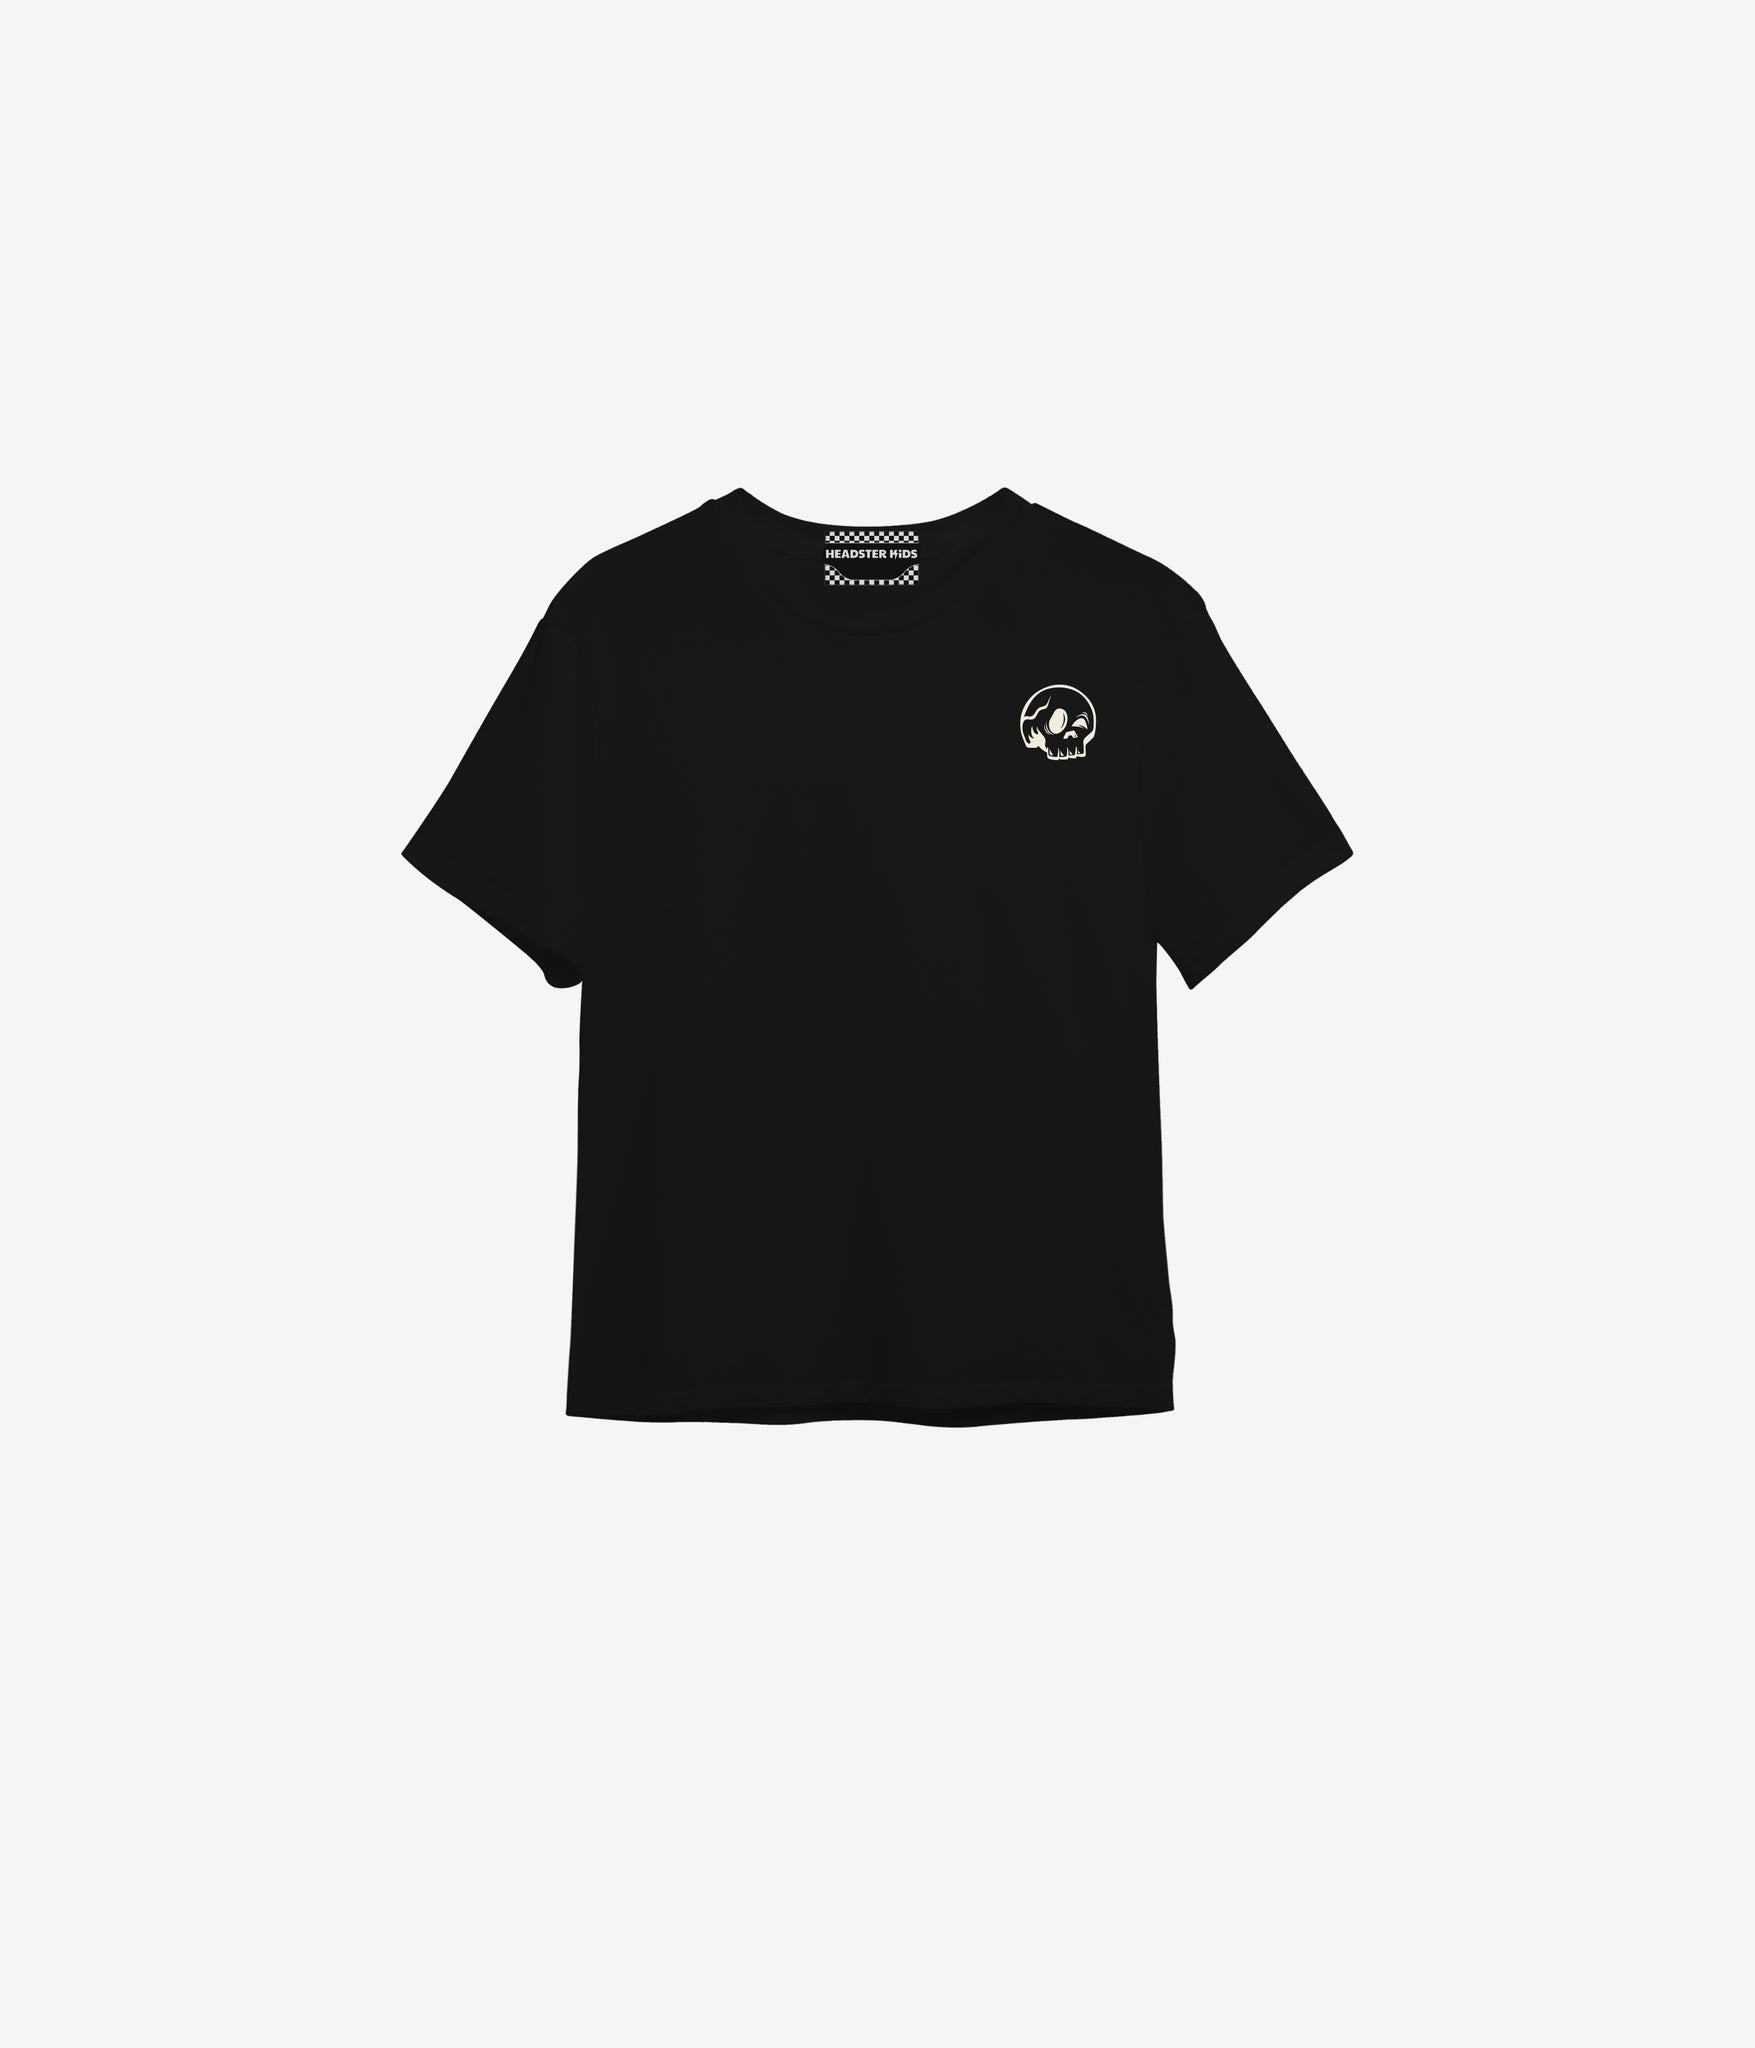 Mohawk T-shirt - Black